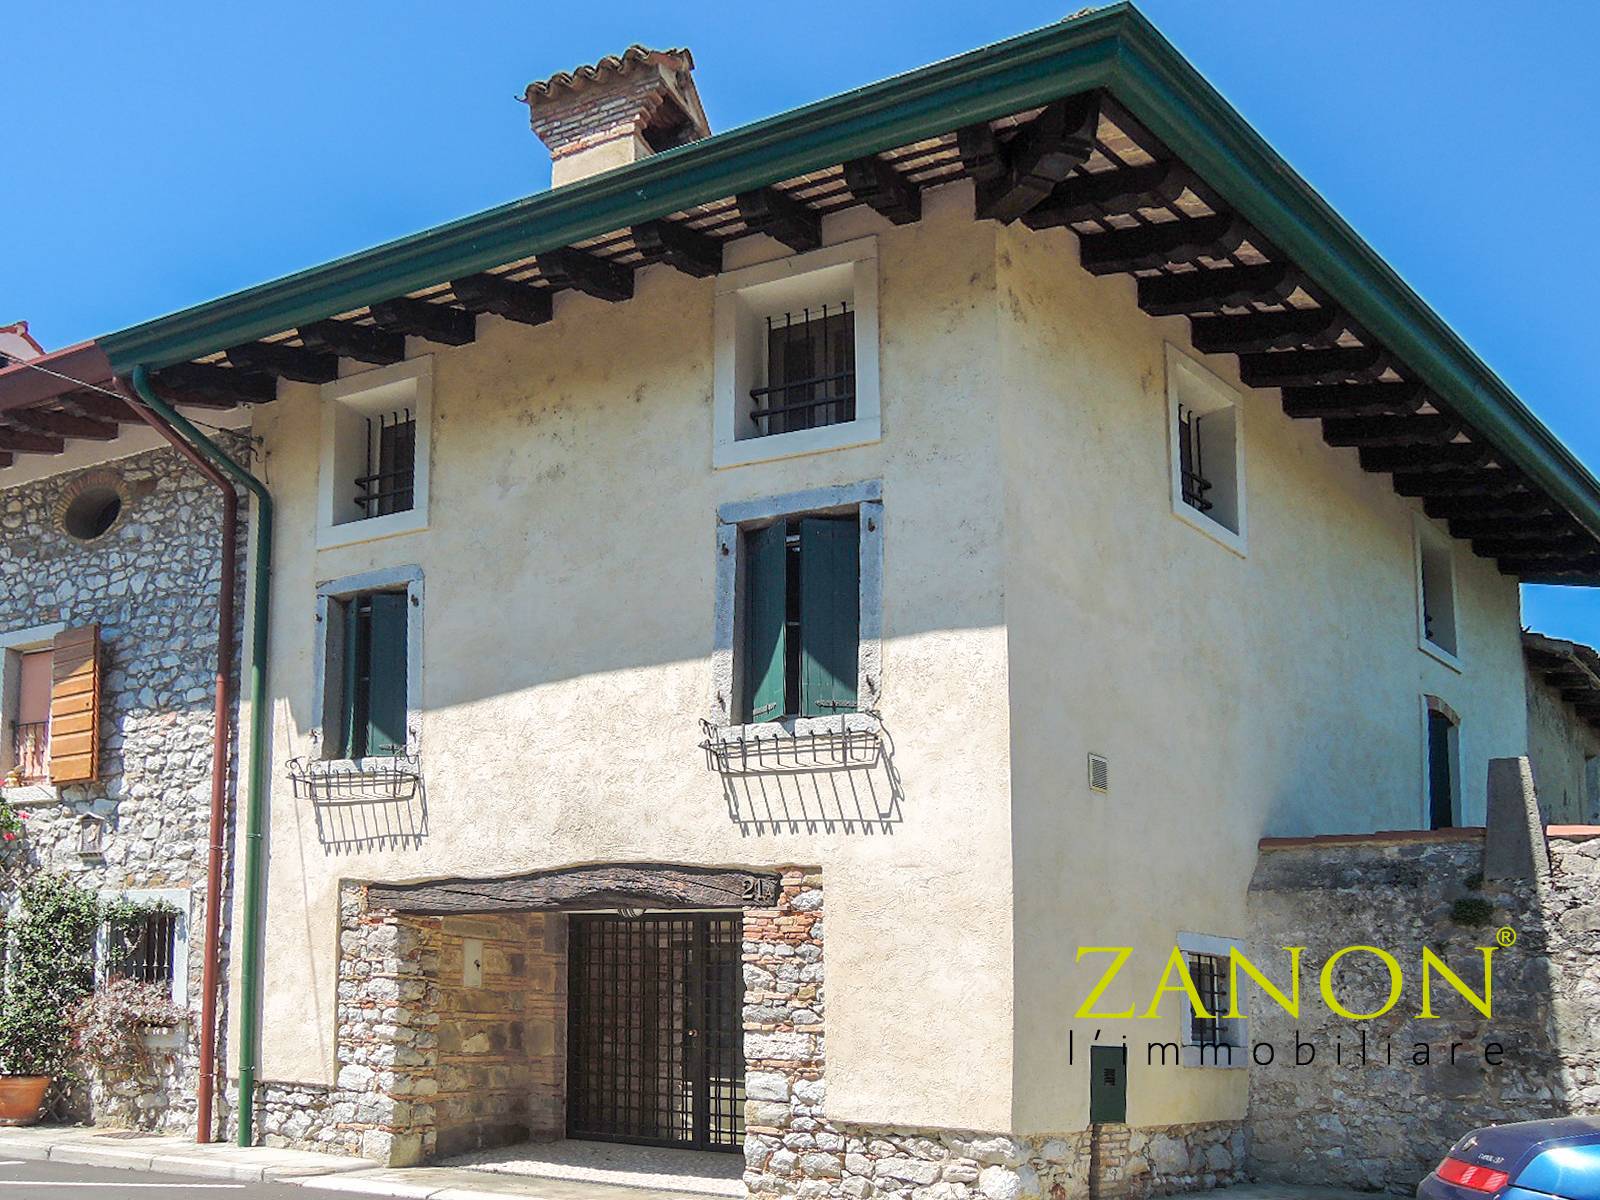 Soluzione Semindipendente in vendita a Romans d'Isonzo, 9 locali, zona a, prezzo € 140.000 | PortaleAgenzieImmobiliari.it